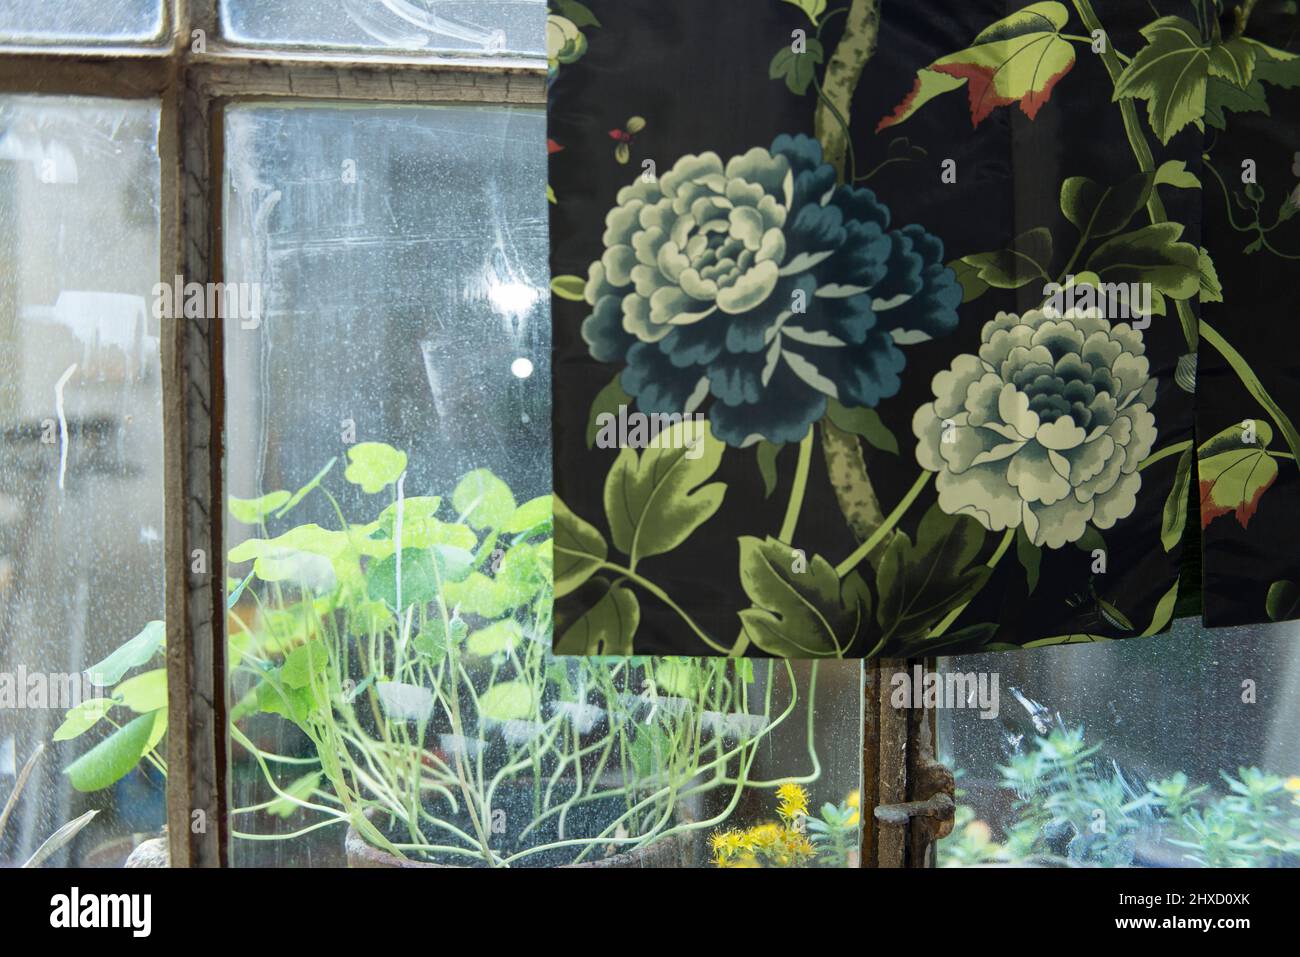 Diseño de tela en la ventana, plantas dentro del exterior, ventana del estudio Foto de stock